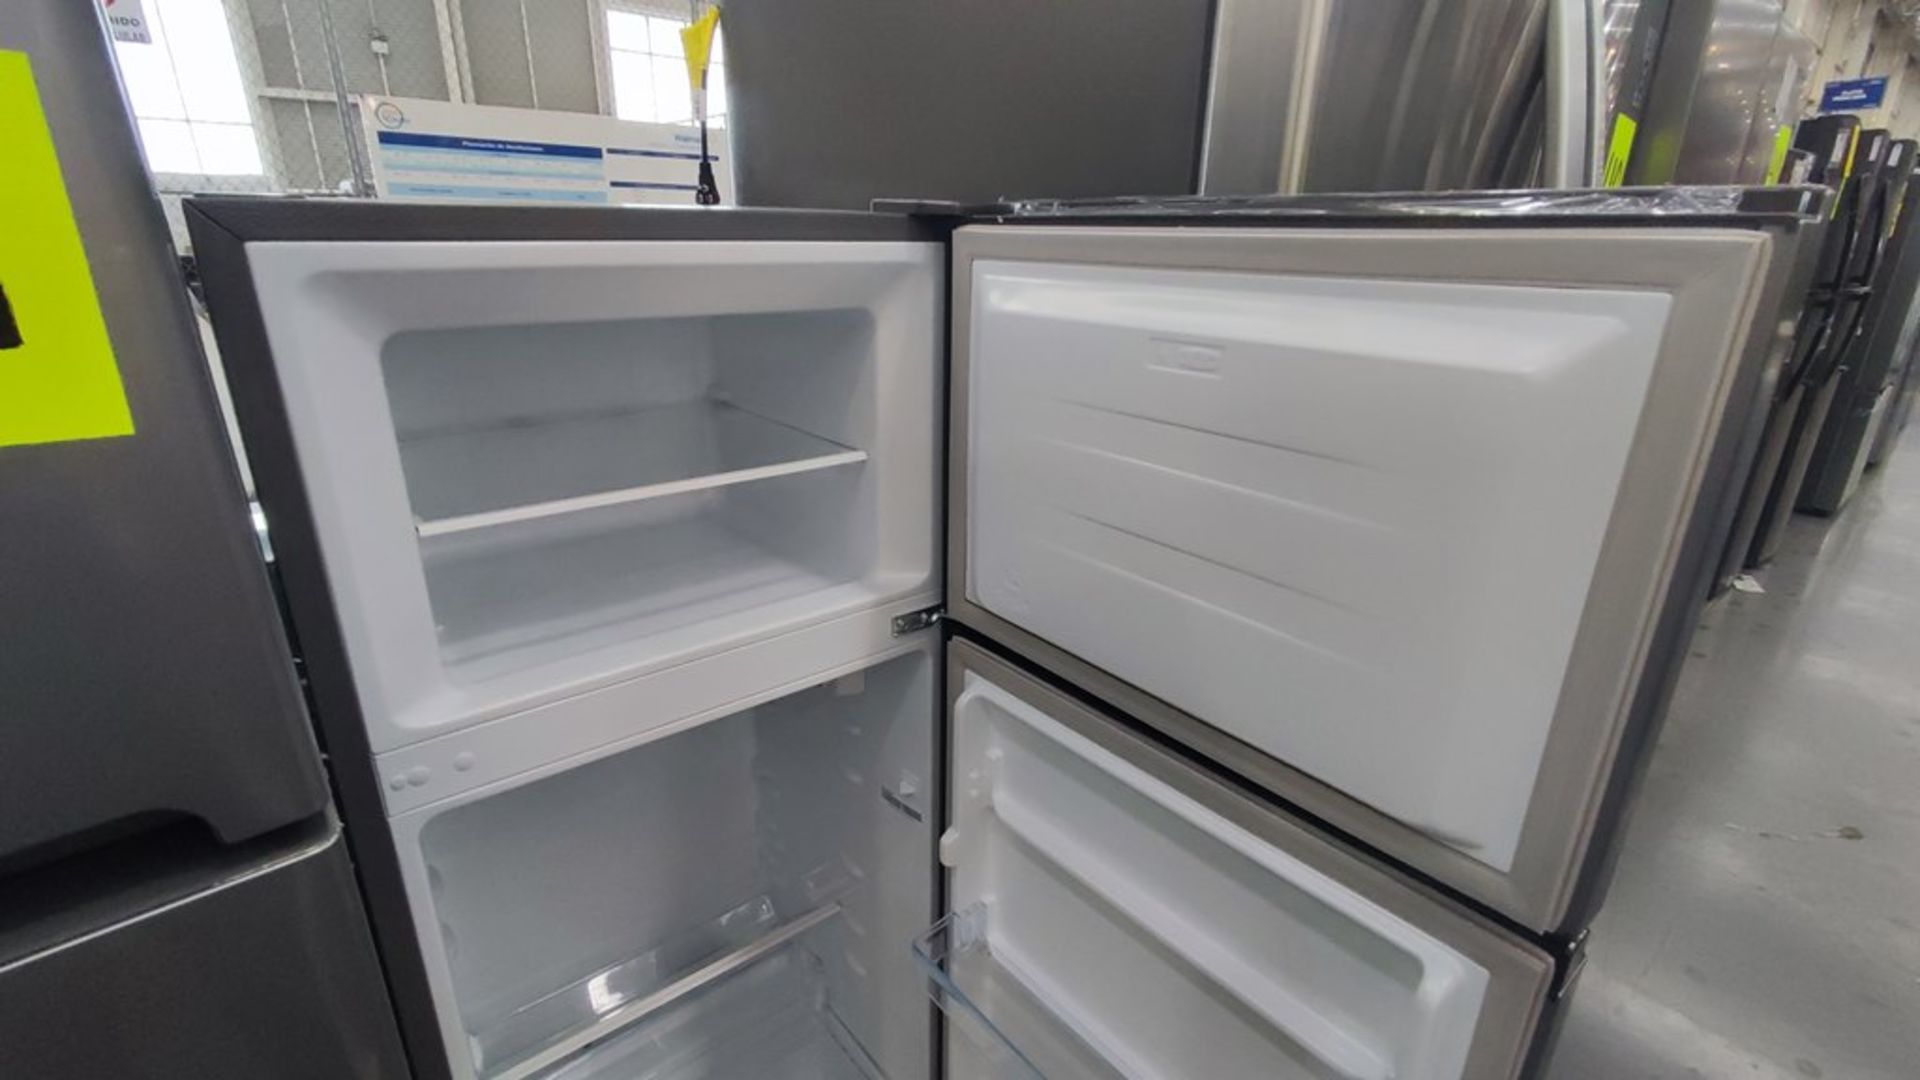 Lote de 2 Refrigeradores contiene: 1 Refrigerador Marca Hisense Modelo BCYNY, No de serie 1B0205Z00 - Image 9 of 11